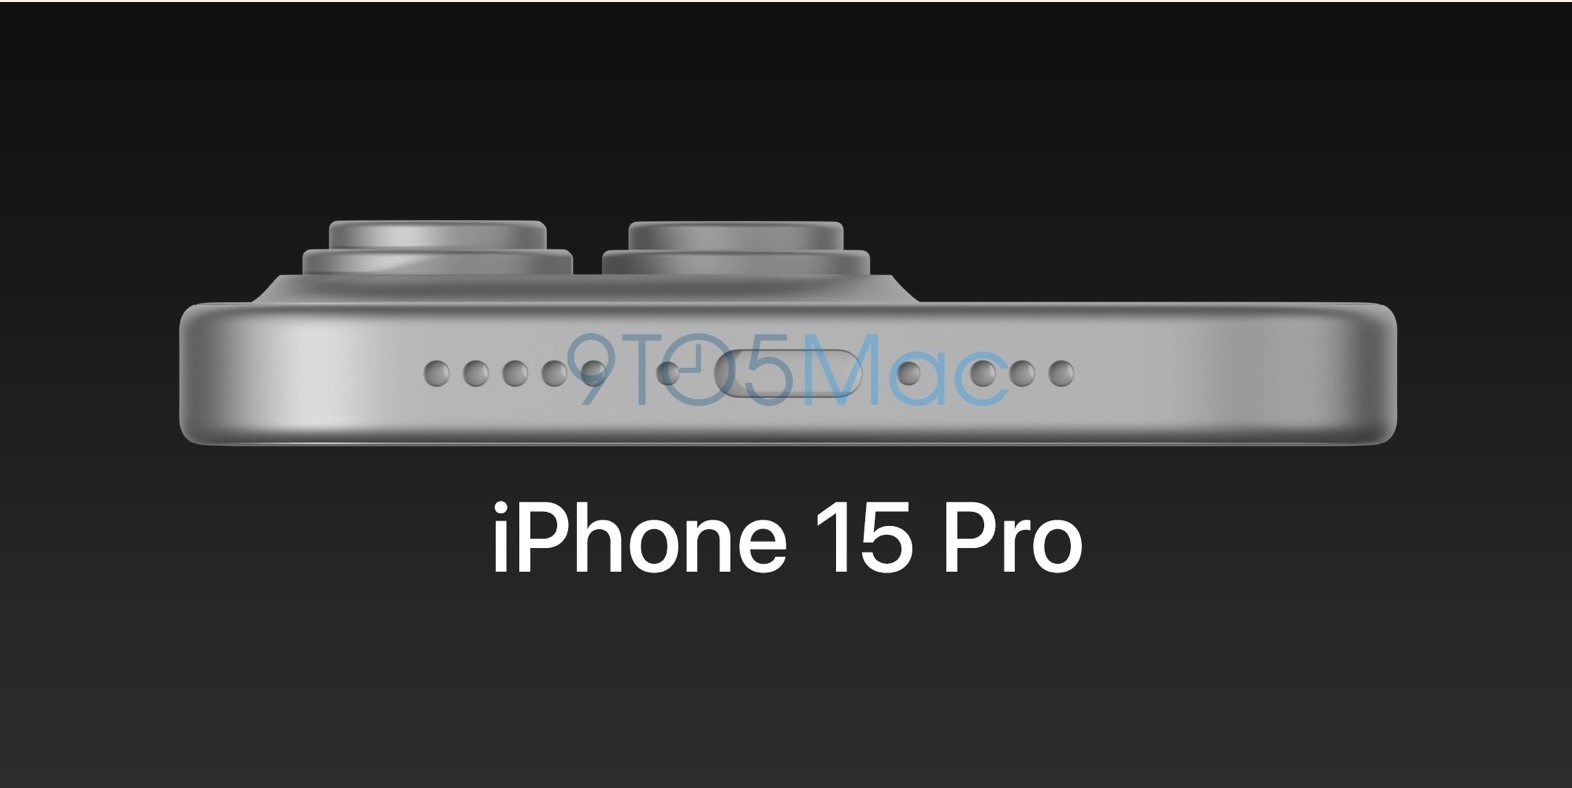 Hình ảnh kết xuất iPhone 15 Pro do 9to5mac công bố. Ảnh: 9to5mac